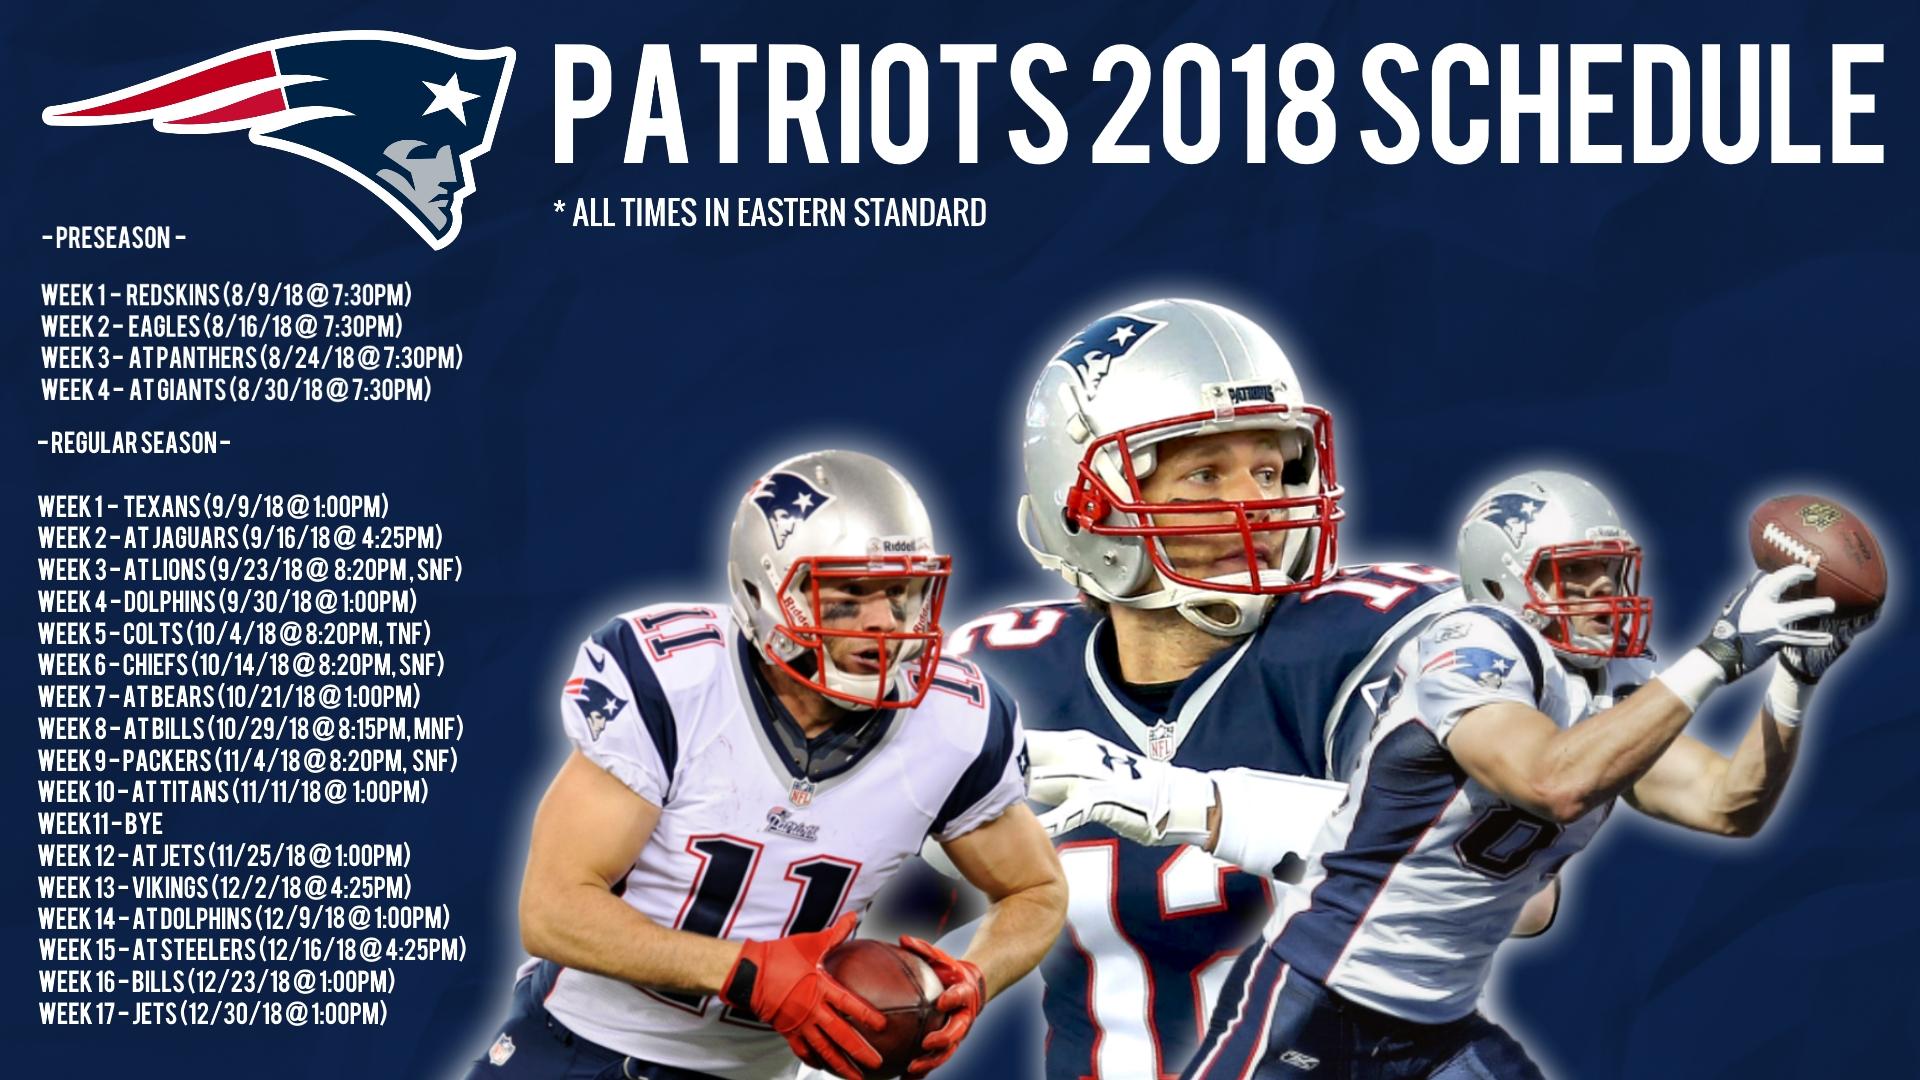 Patriots 2018 Schedule Wallpapers